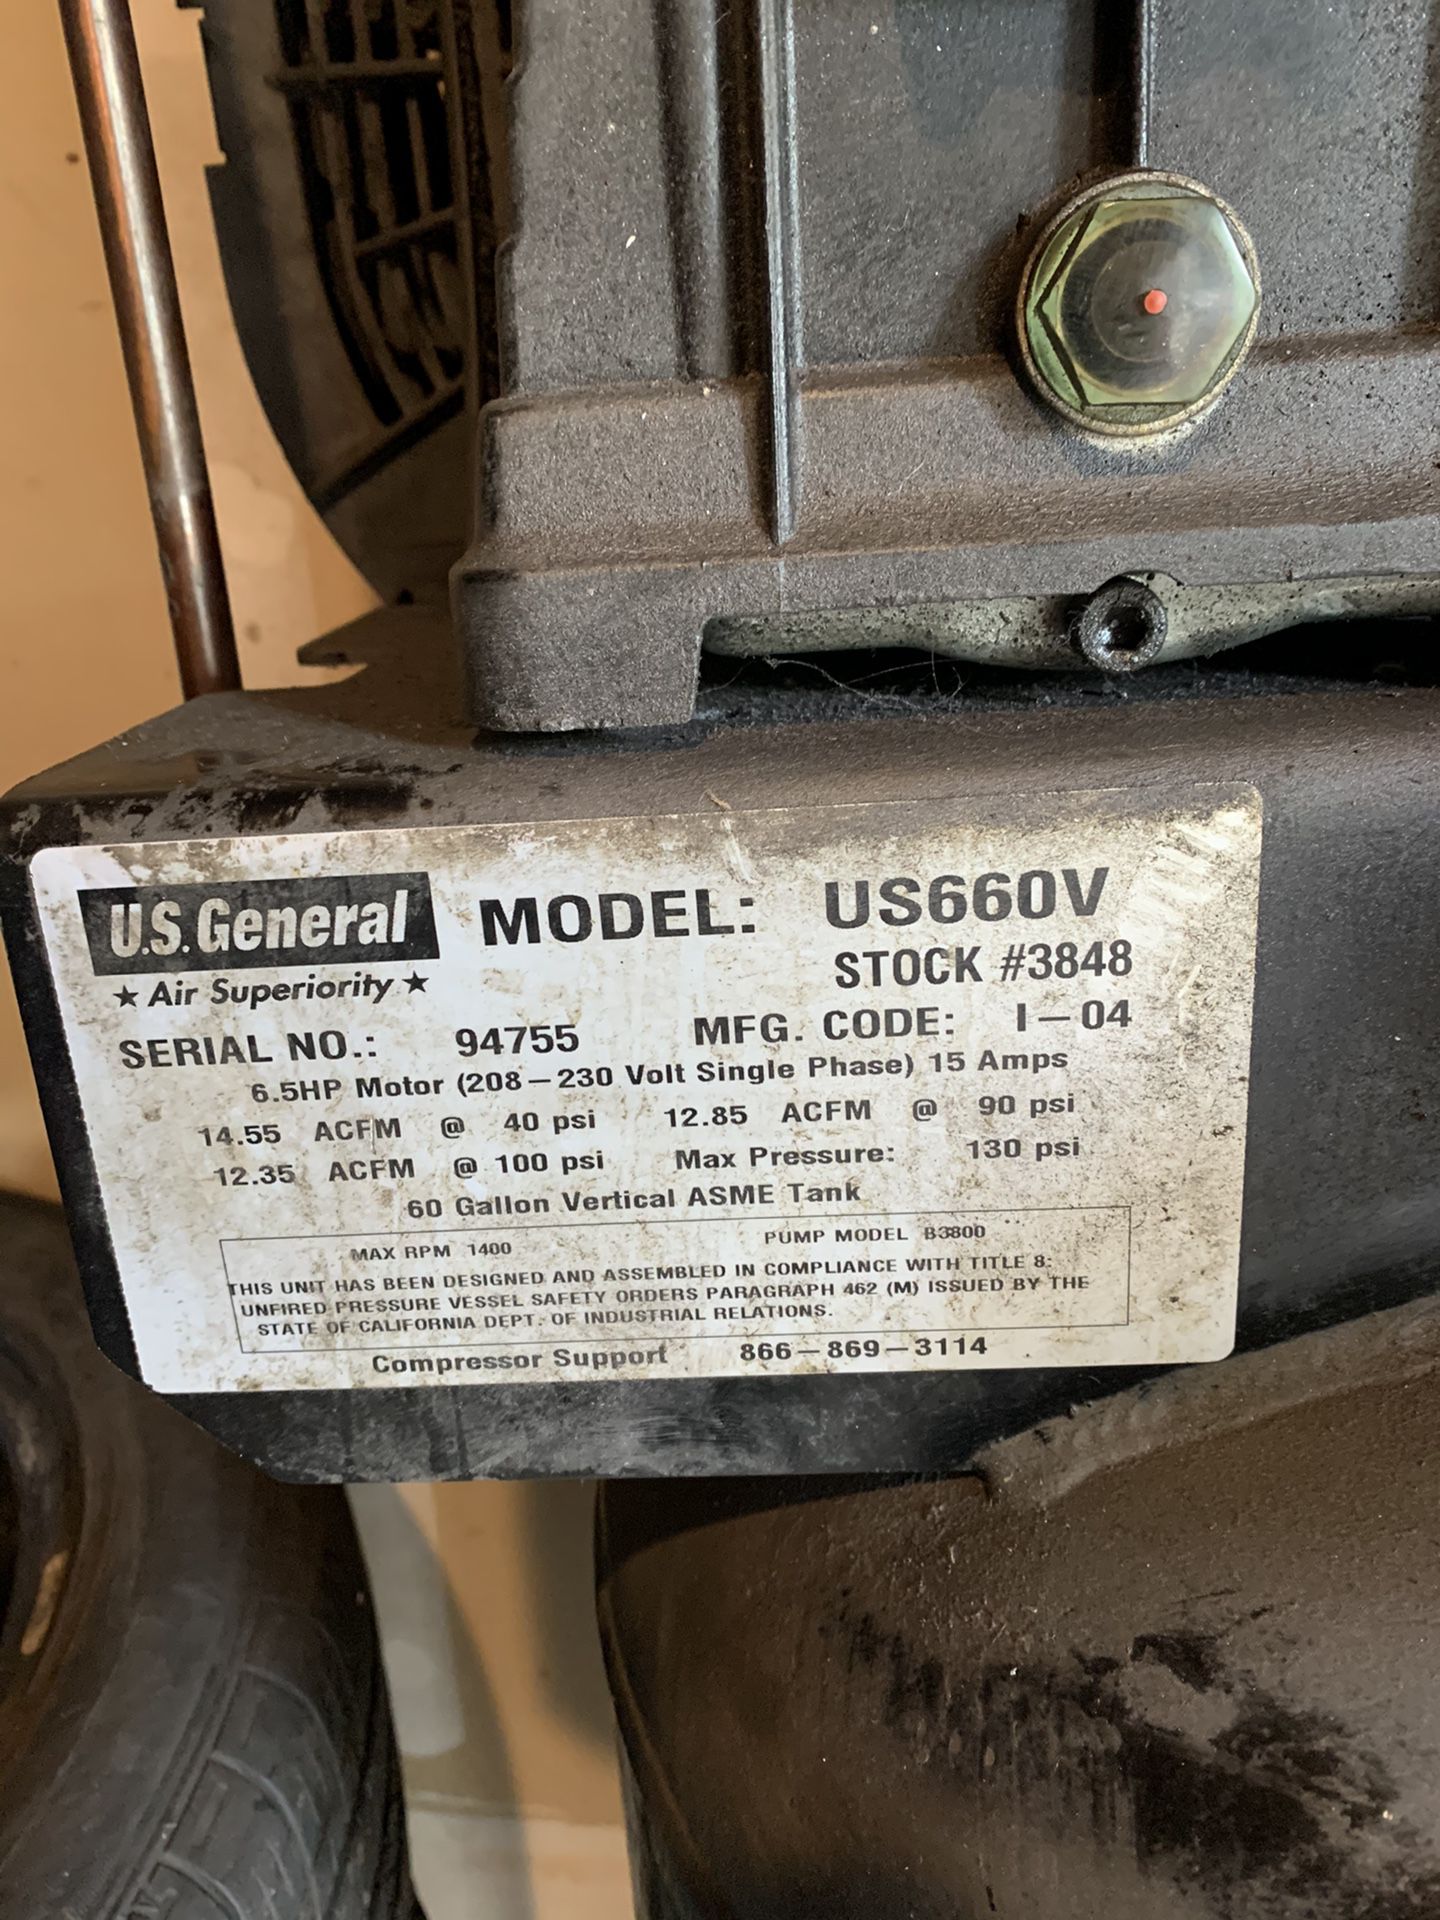 U.S. General 60G 6.5HP $300